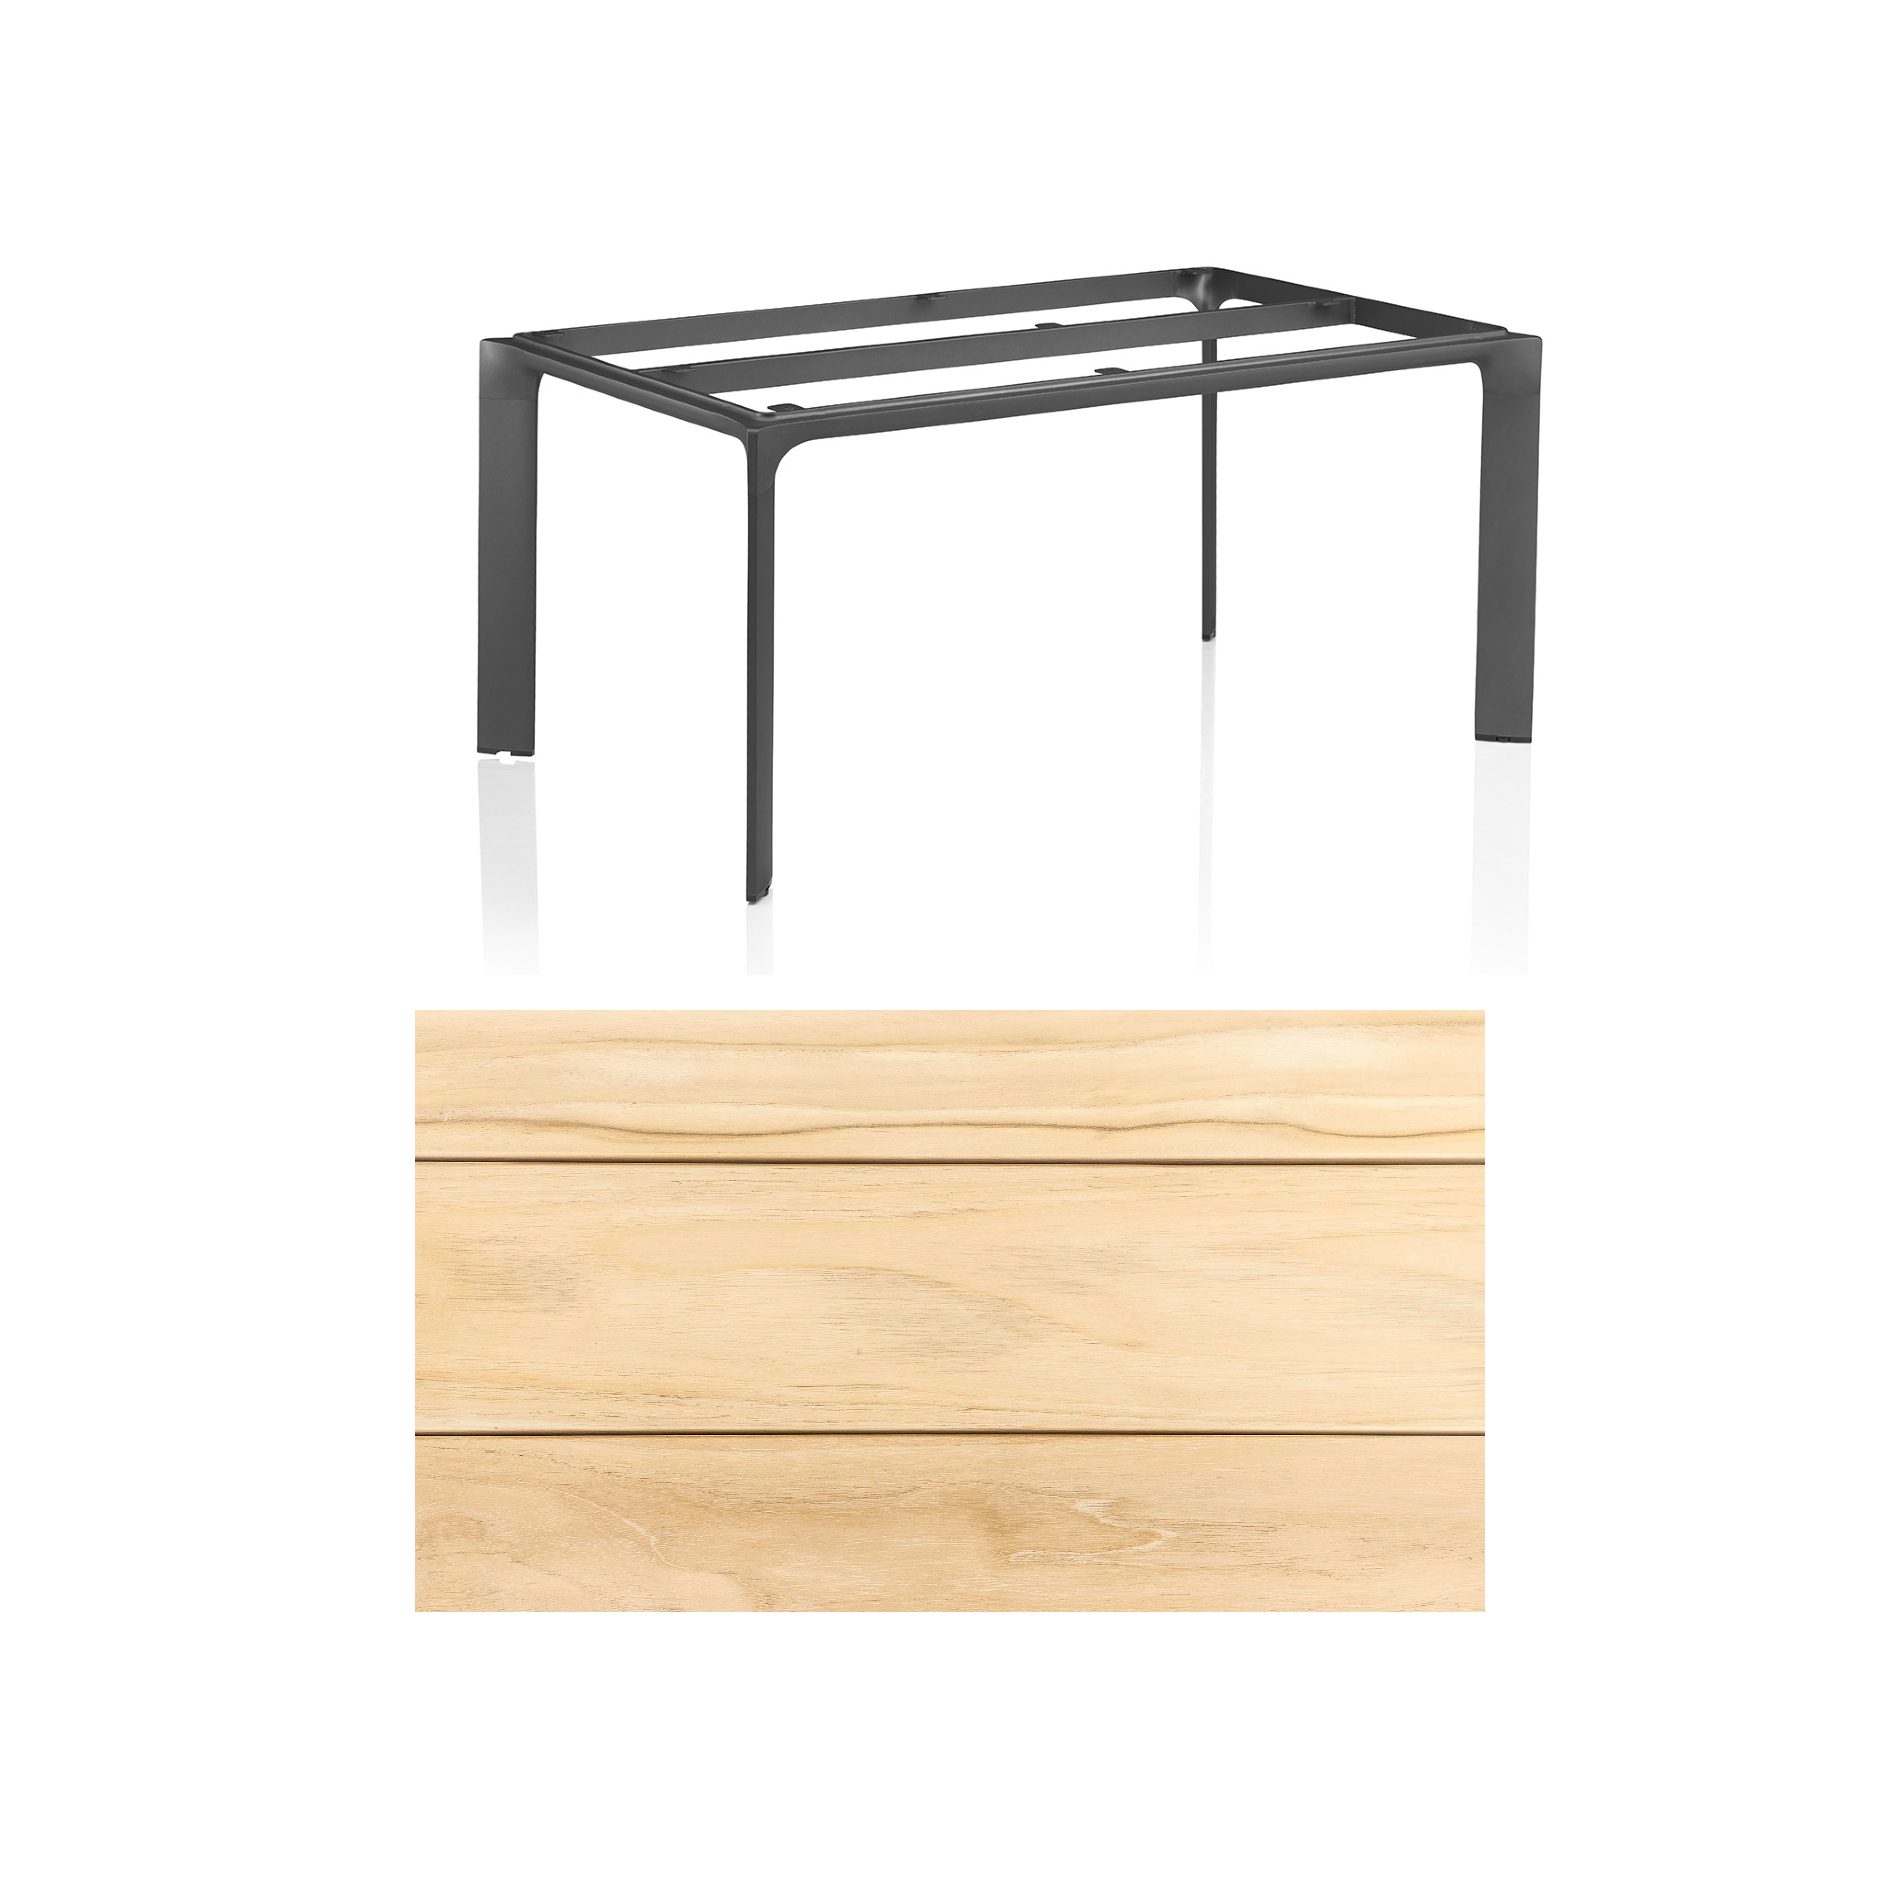 Kettler "Diamond" Tischsystem Gartentisch, Tischgestell Aluminium anthrazit, Tischplatte Teakholz breite Leisten, 160x95 cm